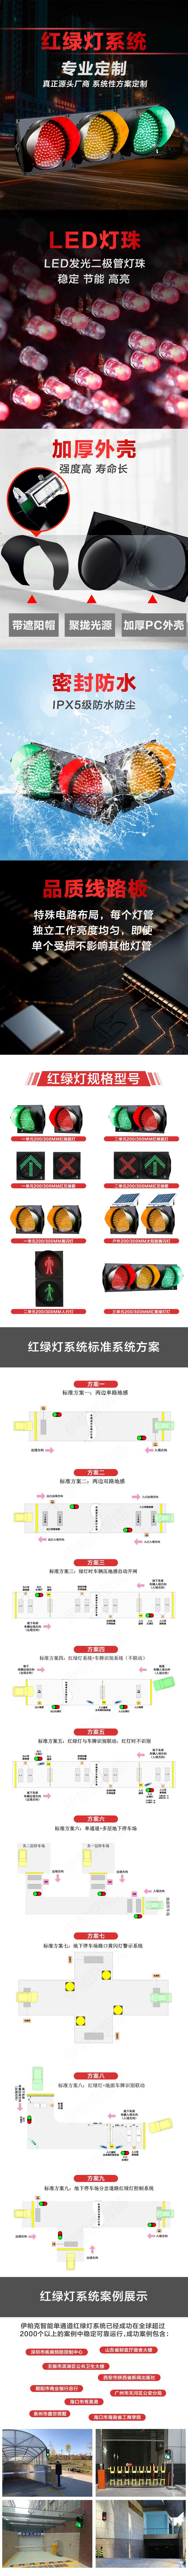 單通道紅綠燈控制系統